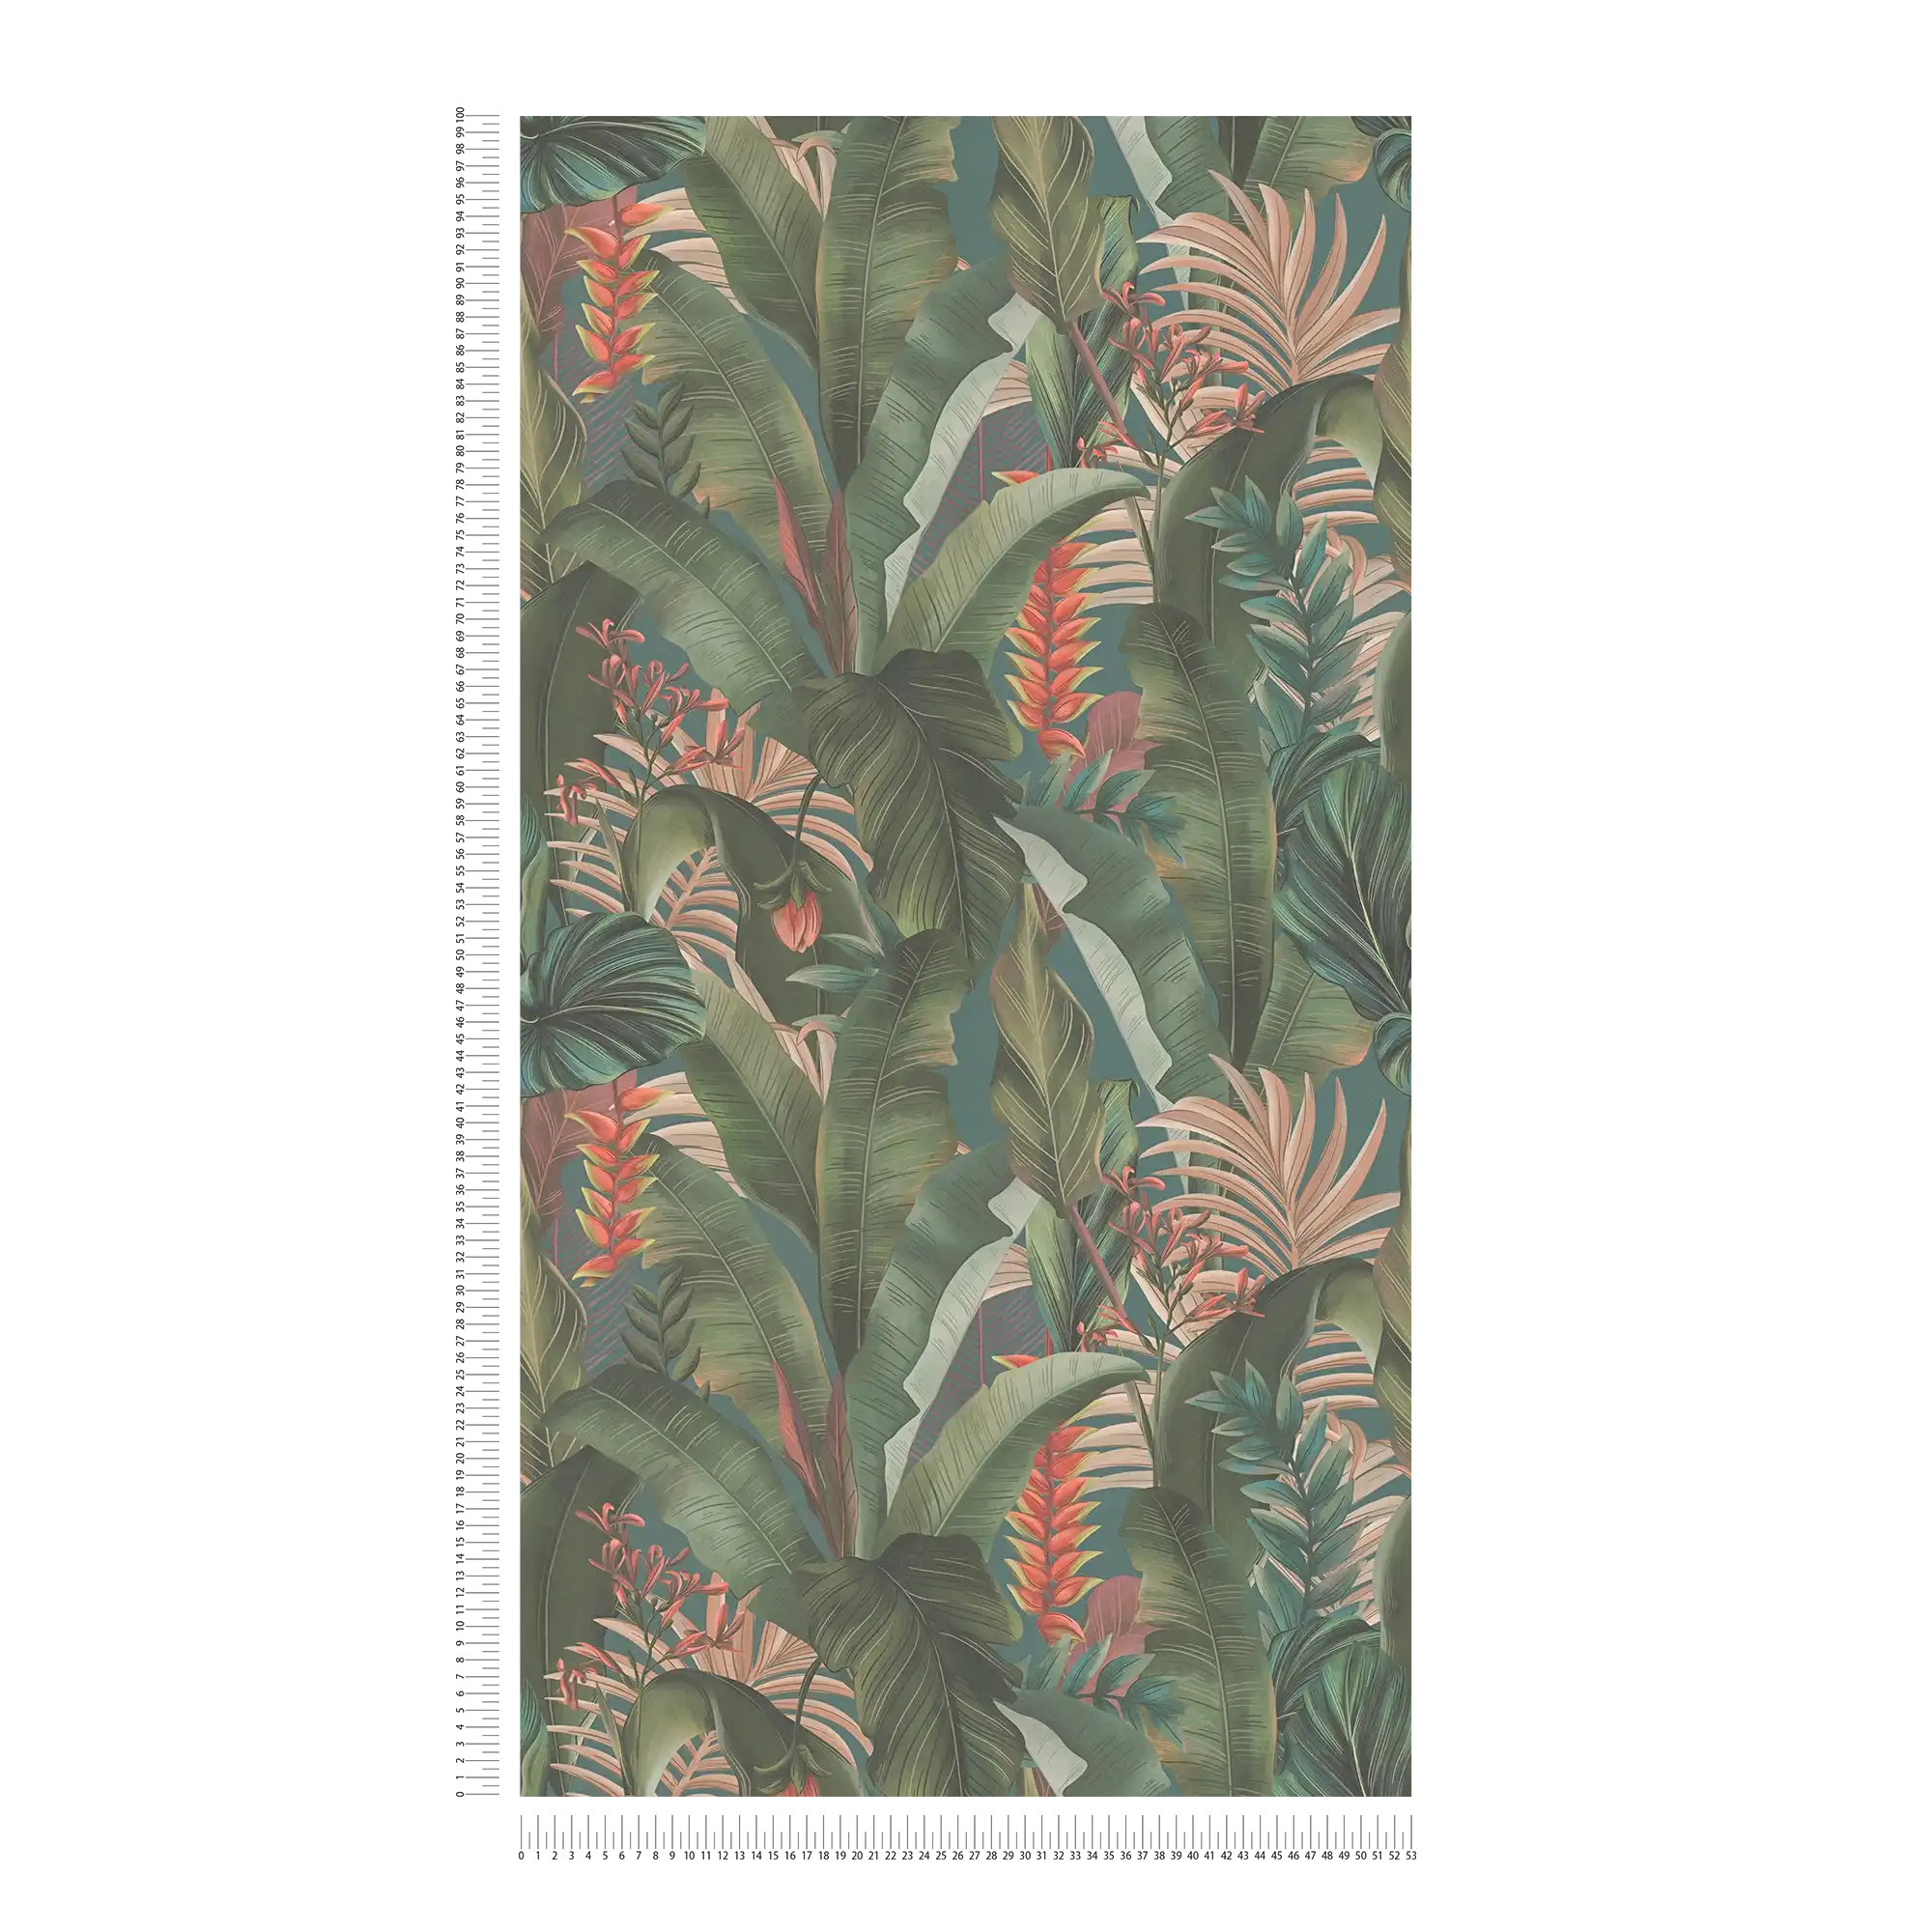             Papel pintado Jungla floral con hojas de palmera y flores textura mate - azul, petróleo, verde
        